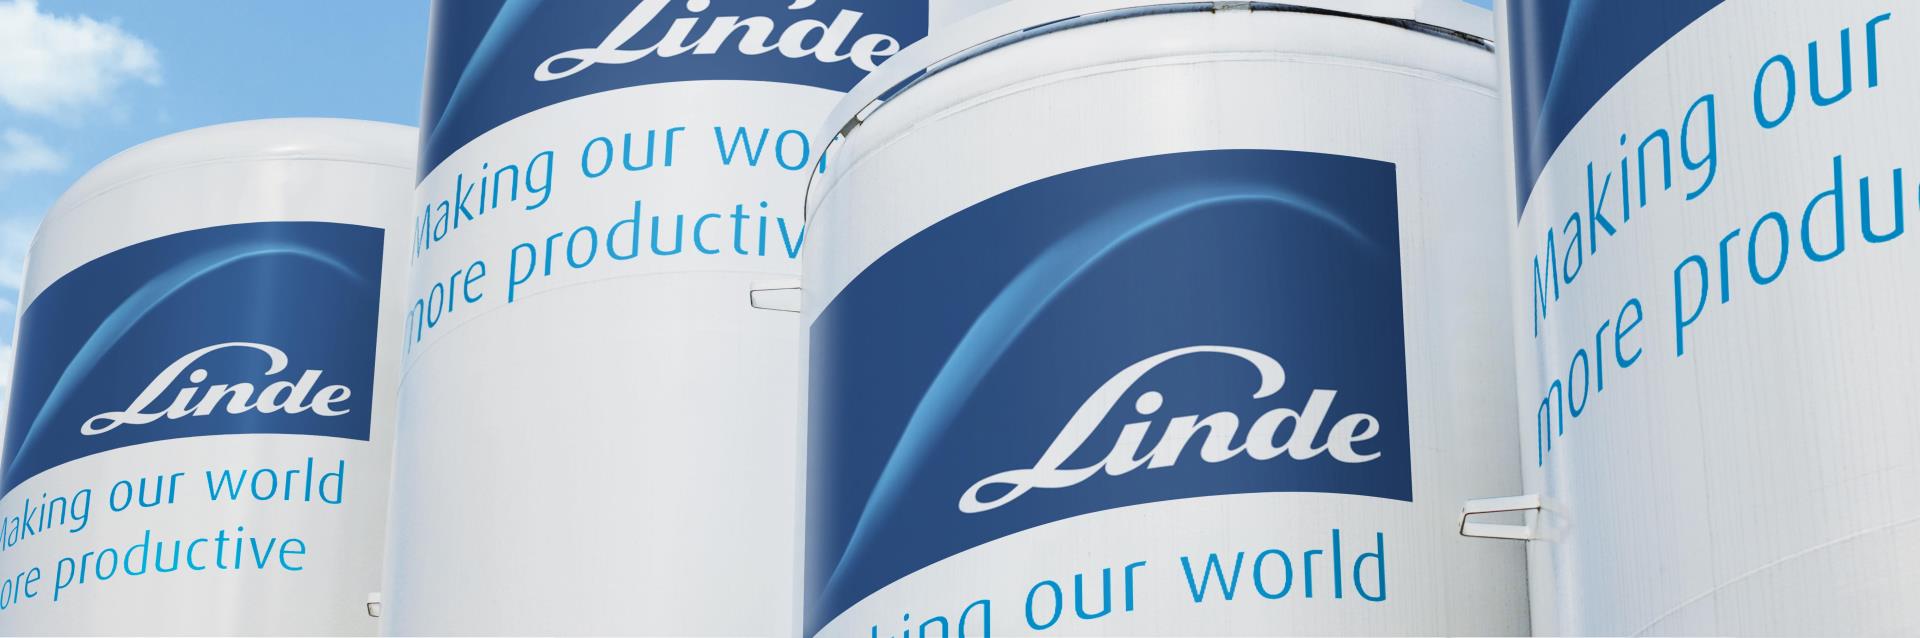 Linde Logo - Linde - Making our world more productive